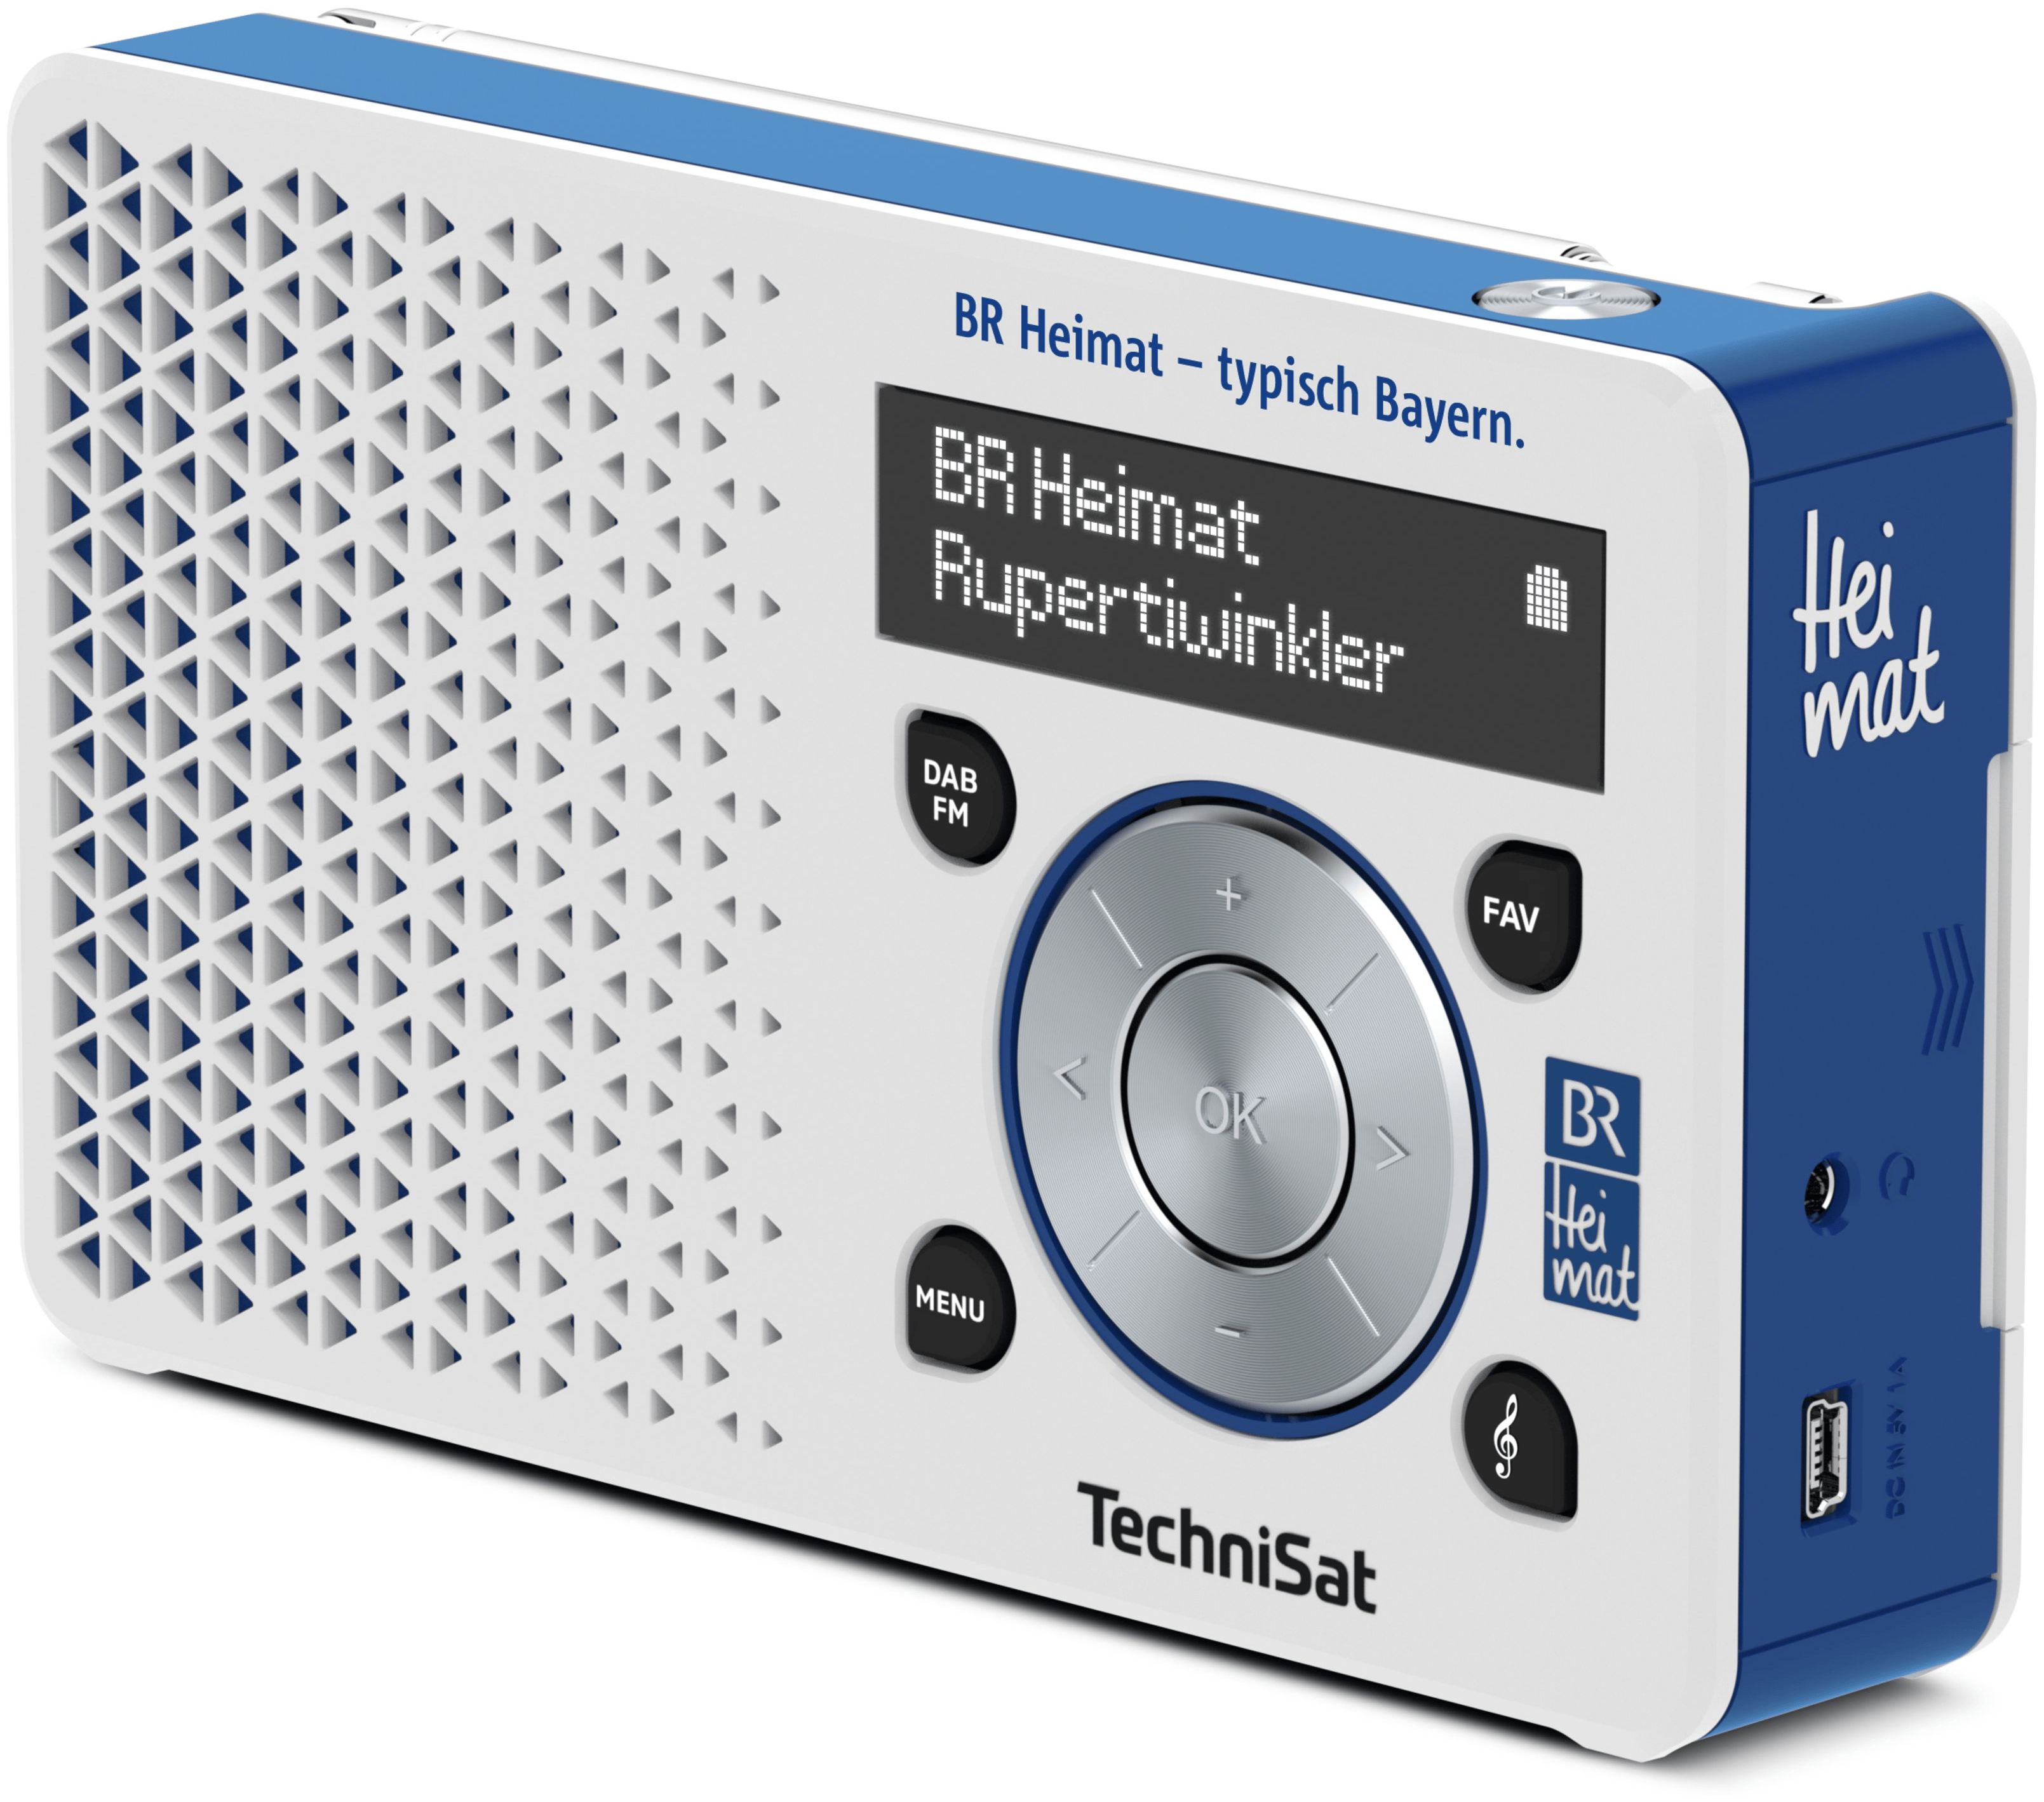 Edition DAB+, DigitRadio1 TechniSat von Radio FM Heimat expert Technomarkt BR Persönlich (Blau, Silber)